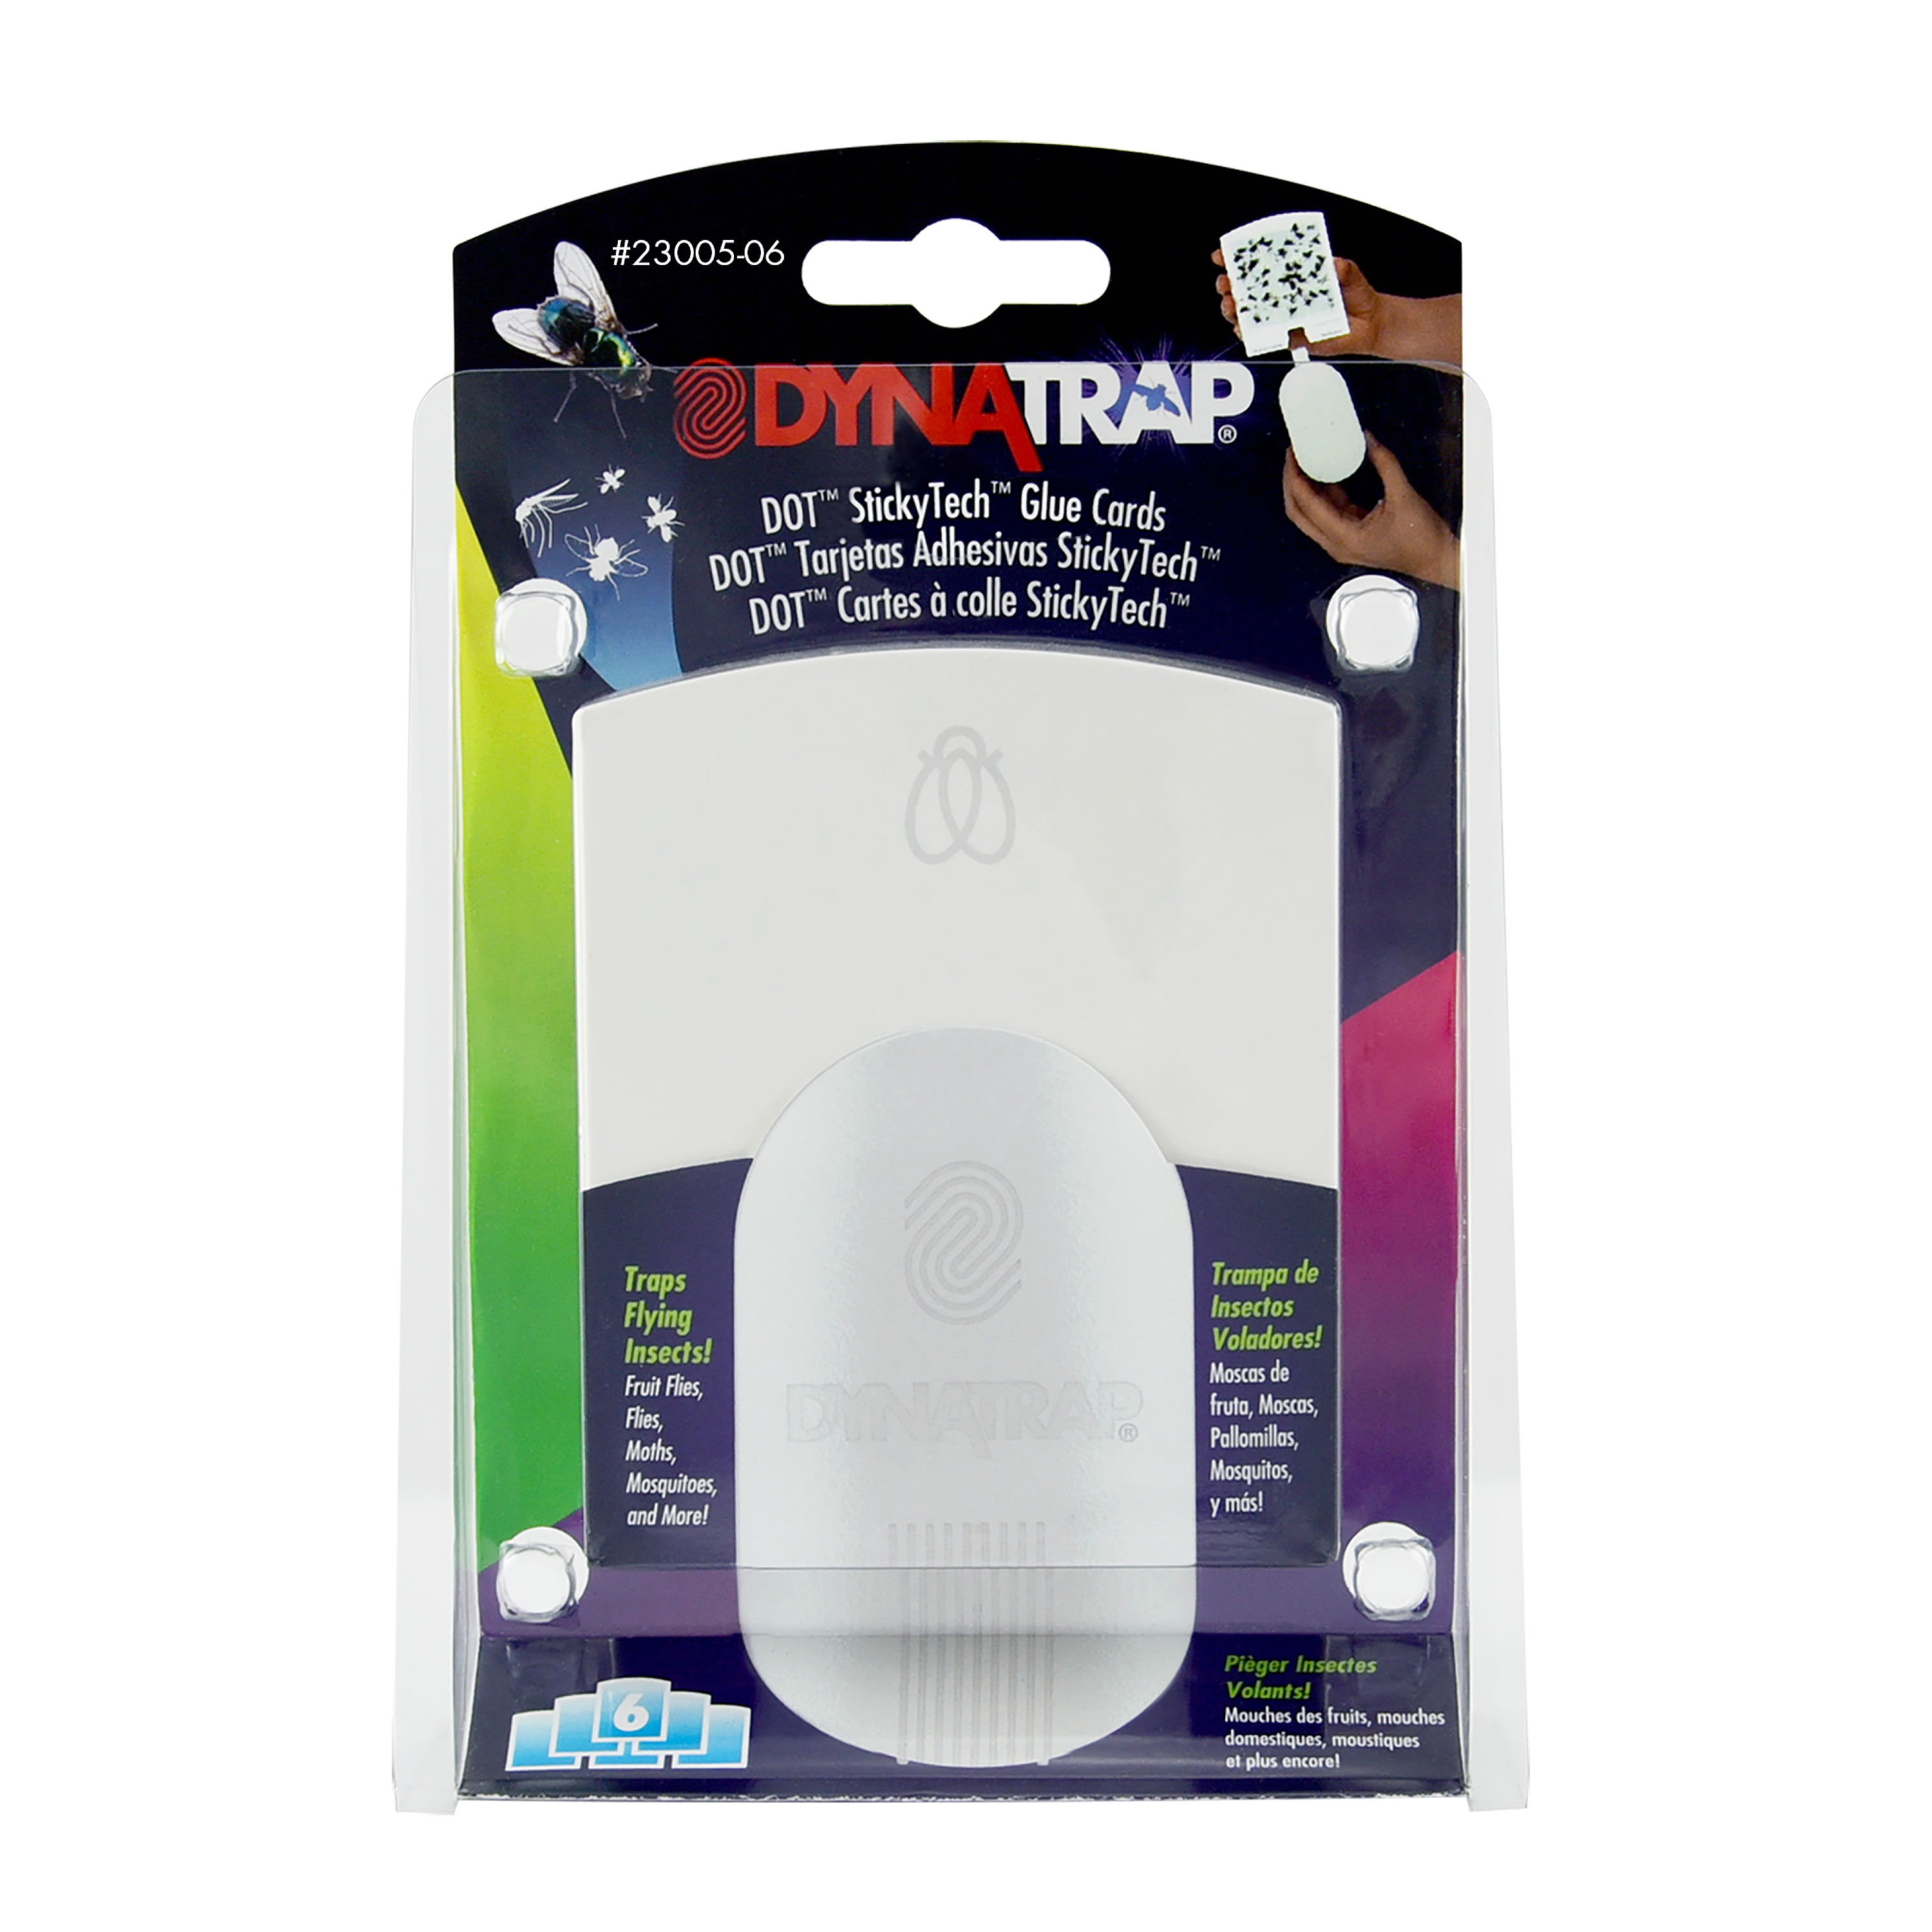 Duct Tape VS DynaTrap StickyTech Glue Cards